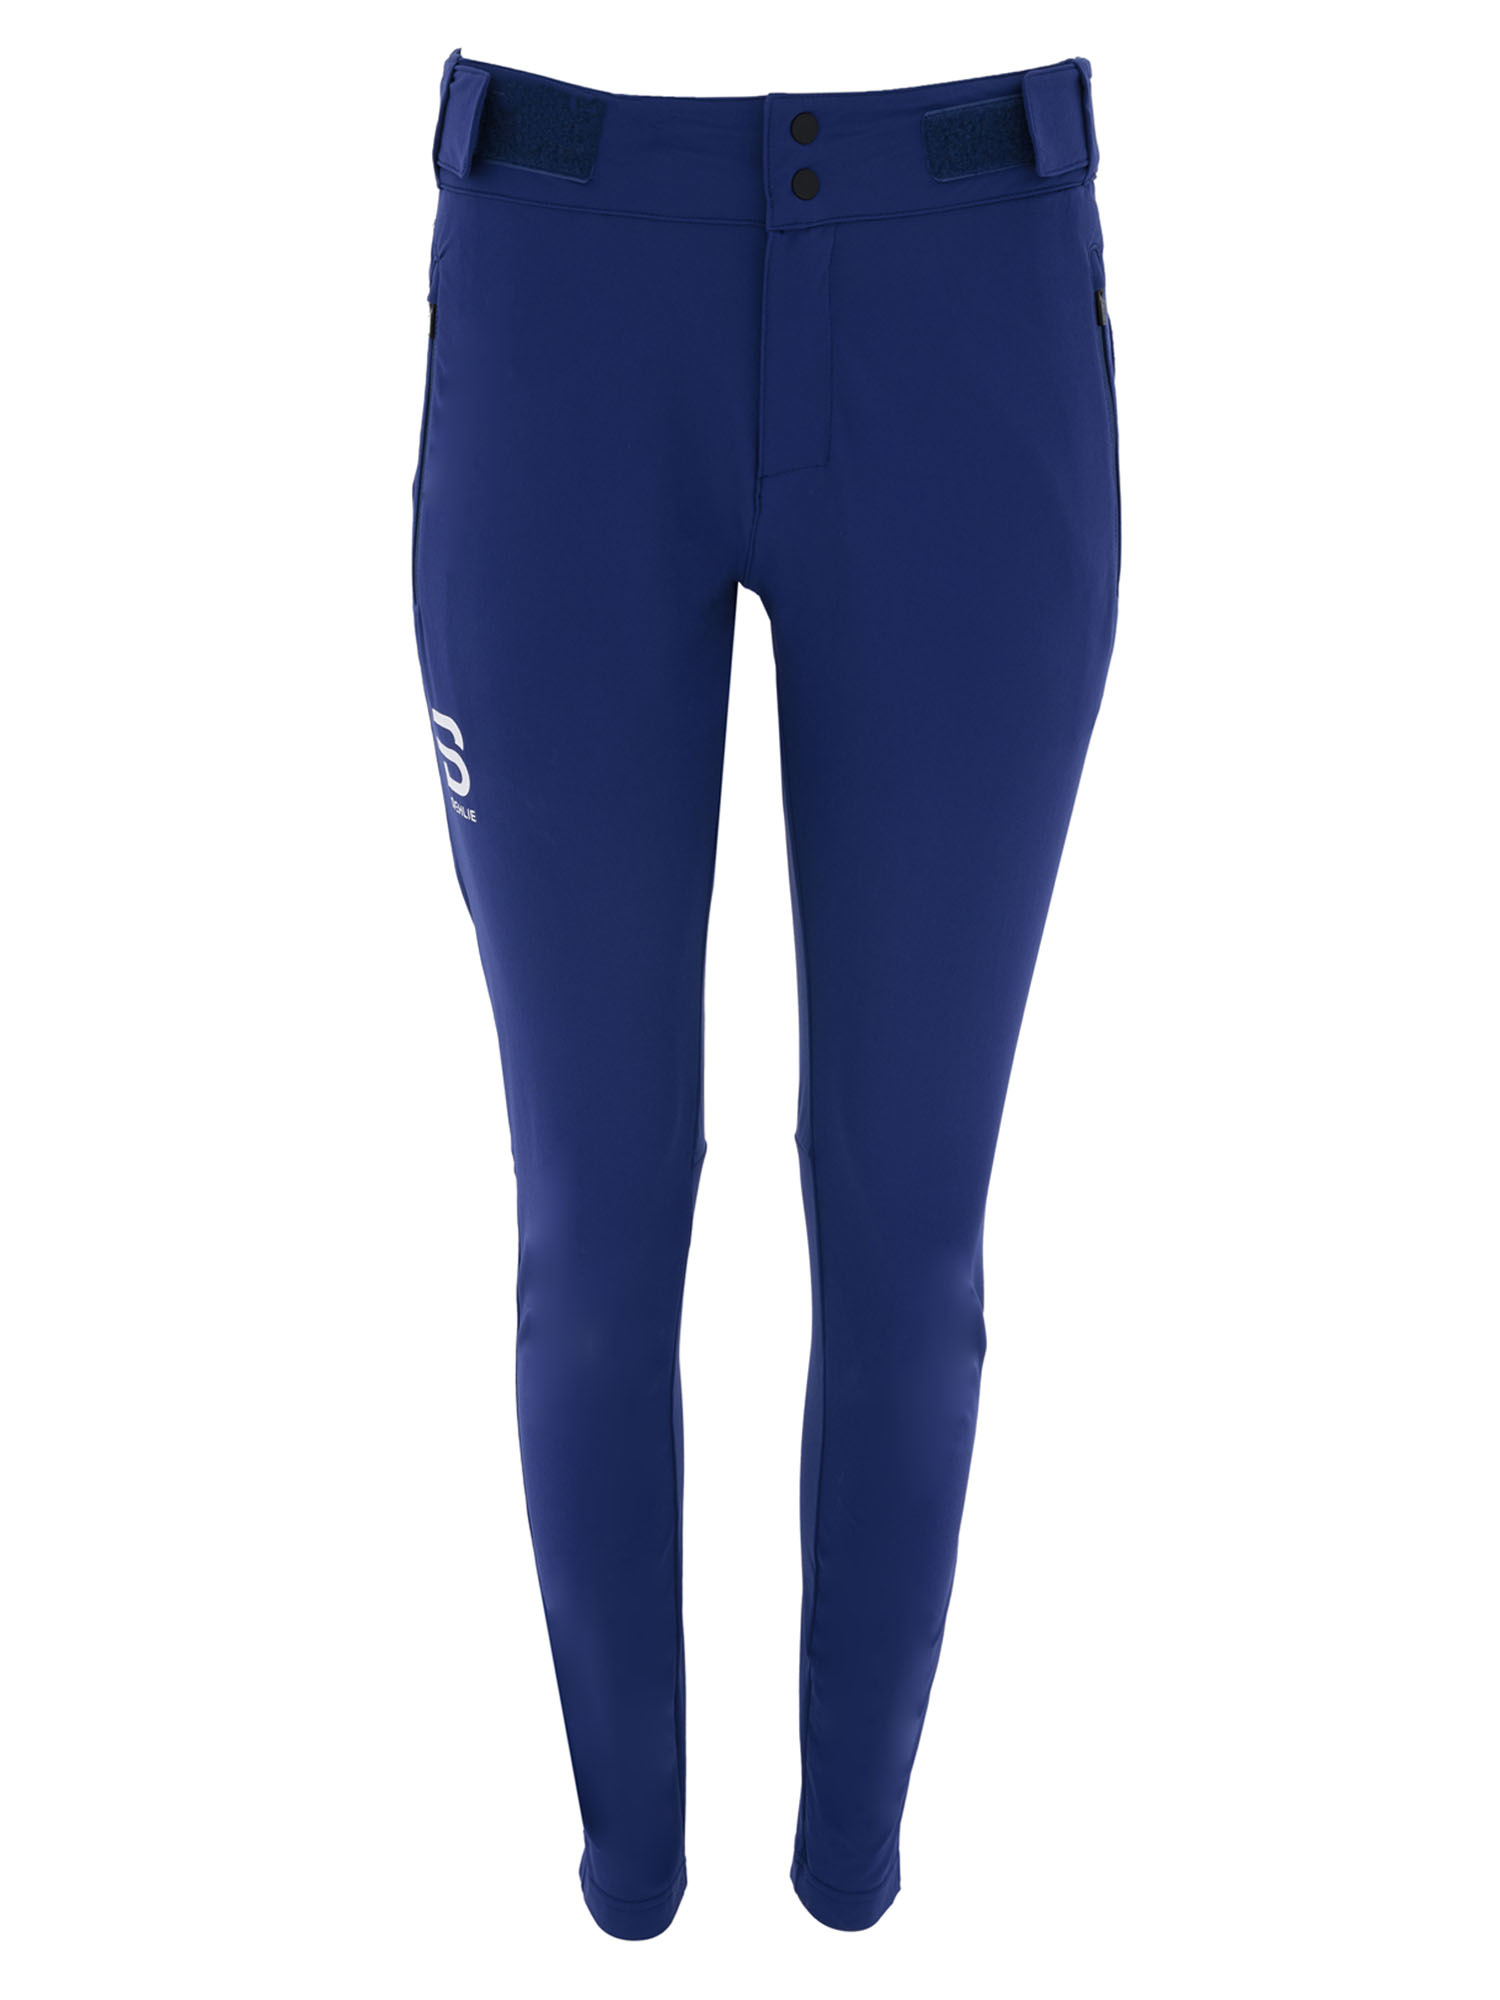 Спортивные брюки женские Bjorn Daehlie Pants Versatile Wmn синие M